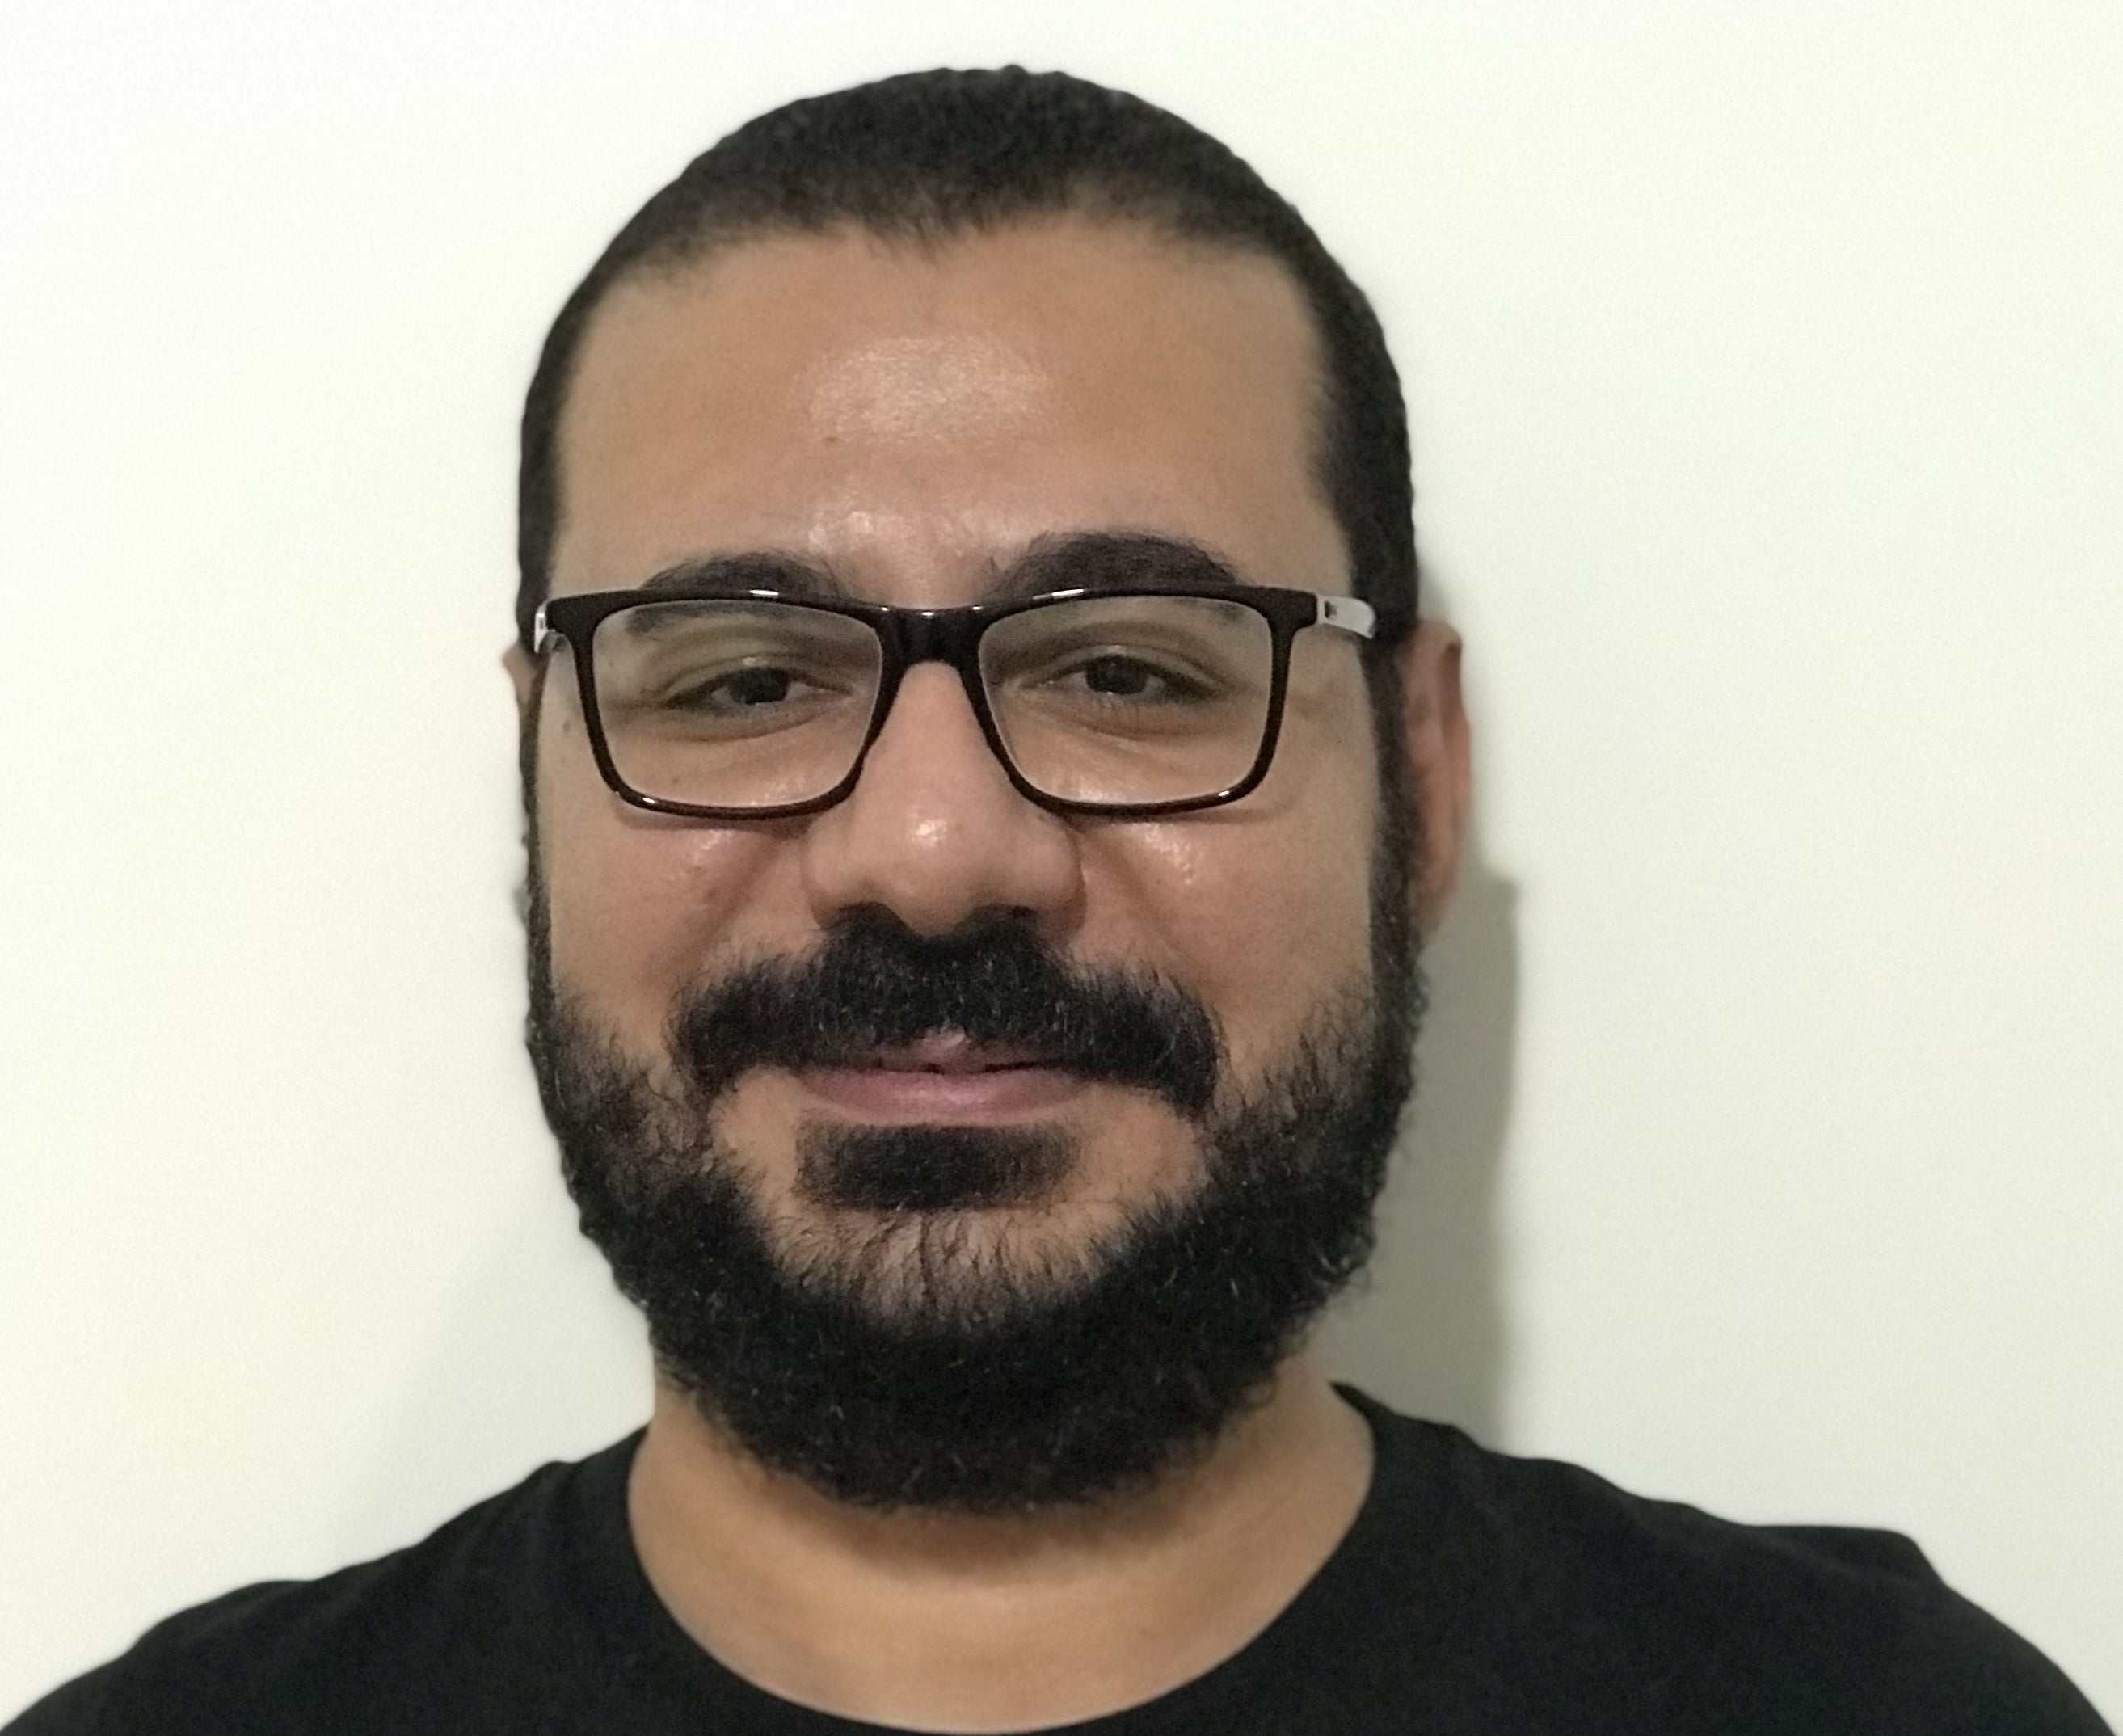 Sherif Saed avatar